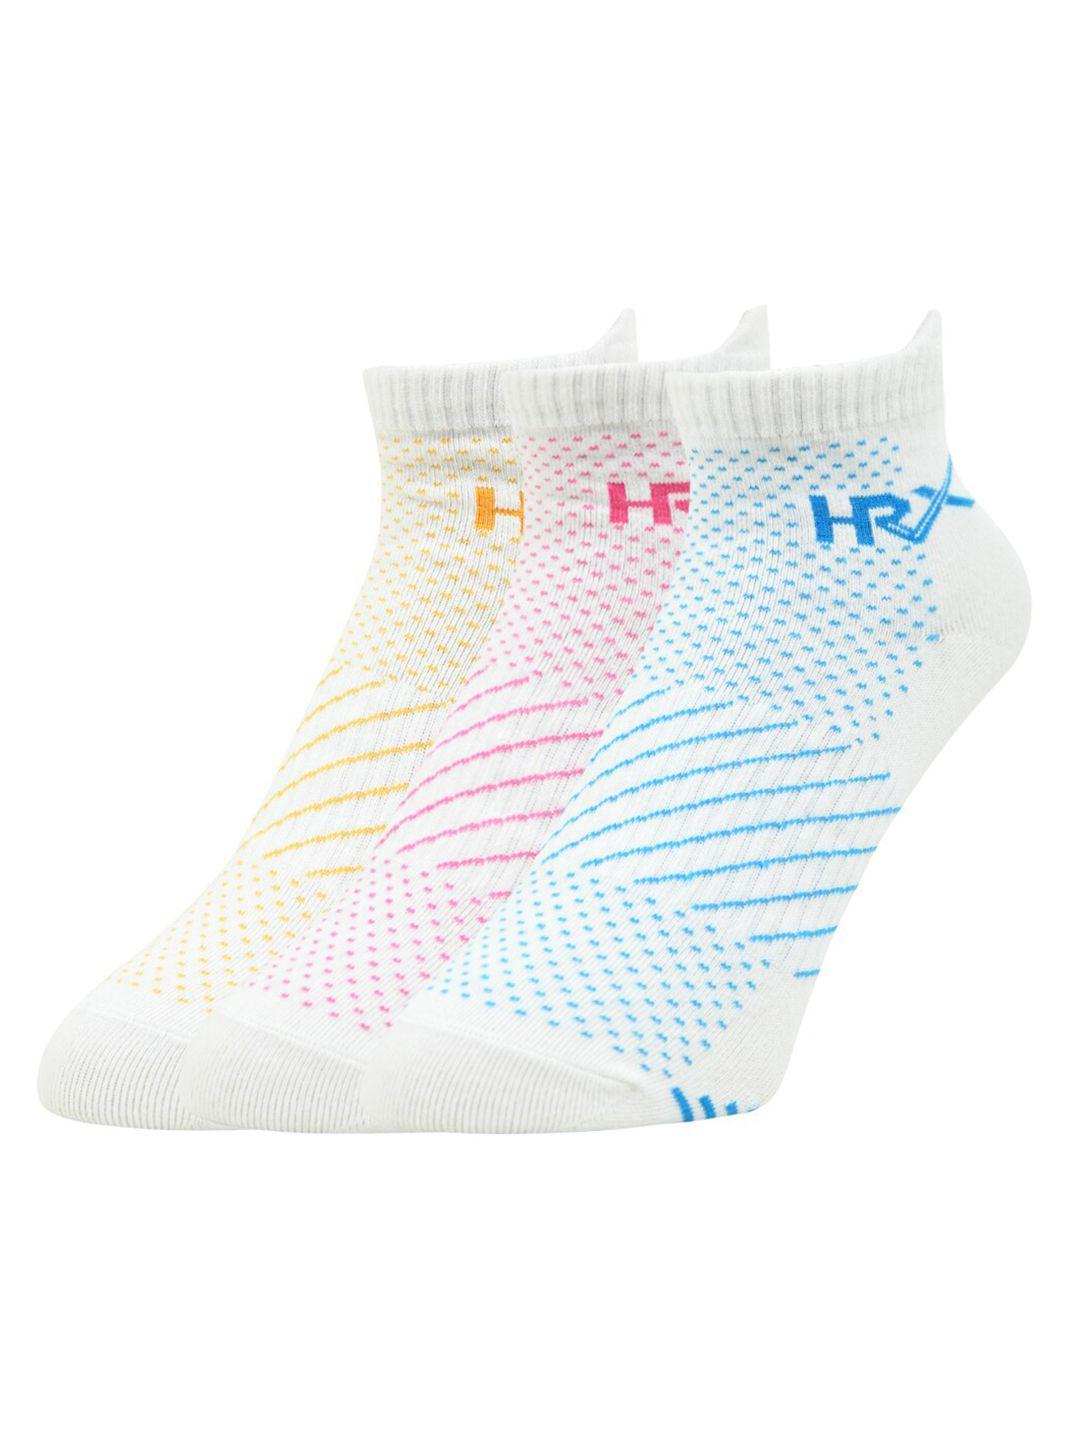 hrx by hrithik roshan women pack of 3 patterned cotton ankle length socks